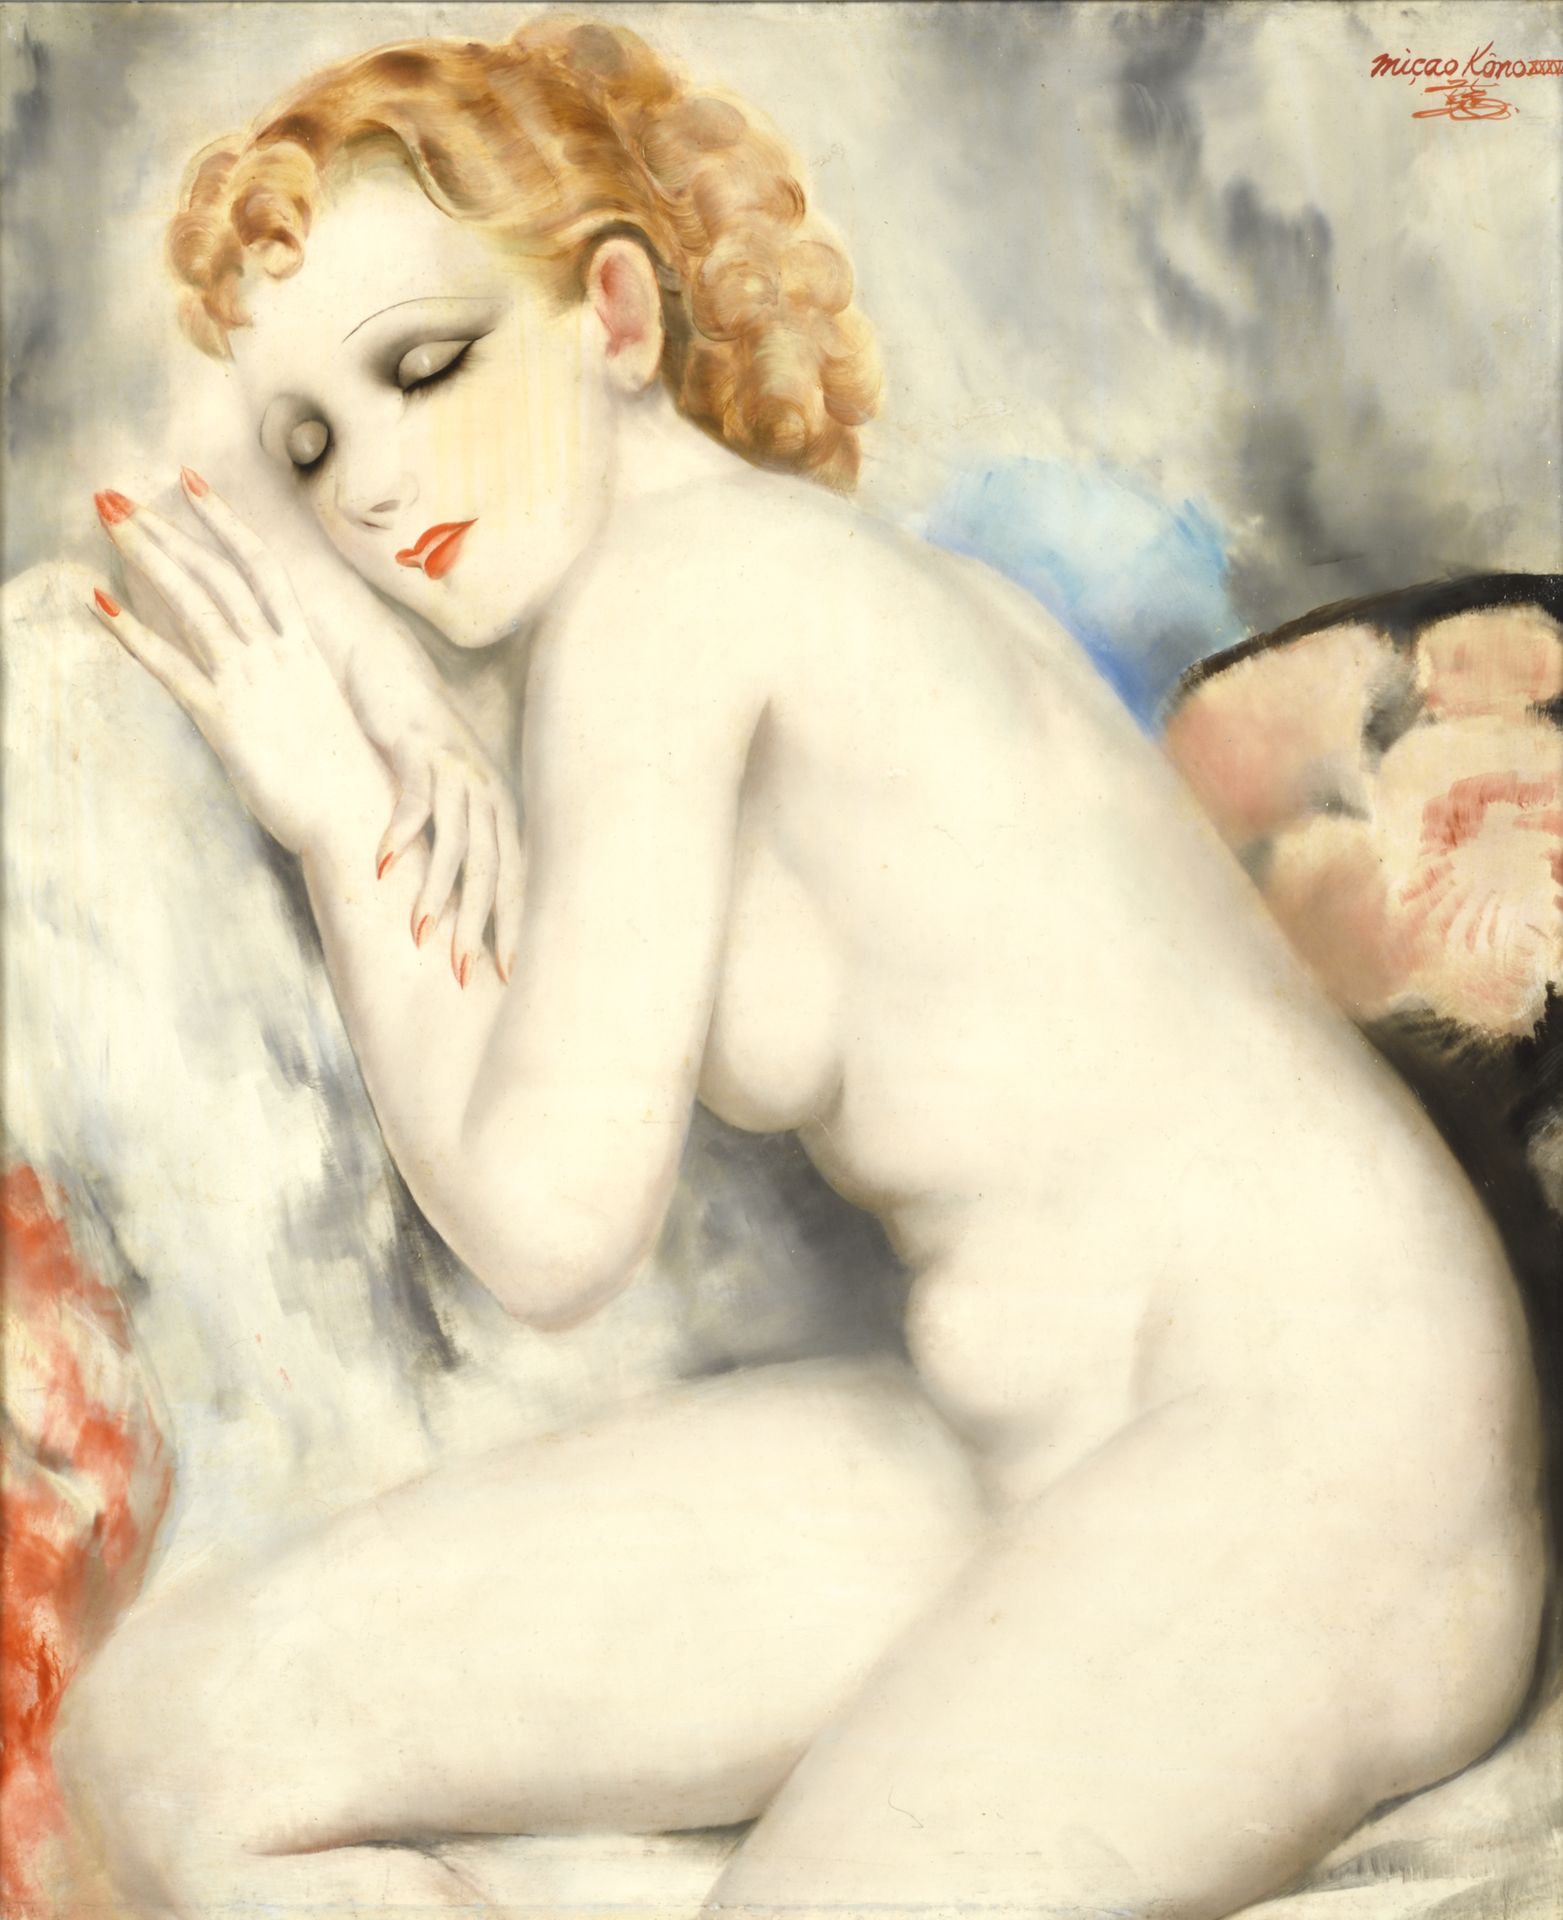 Micao KONO (1876-1954) 妙高小野 (1876-1954)

坐着的裸体女人

布面油画，右上角有签名

55 x 46 厘米